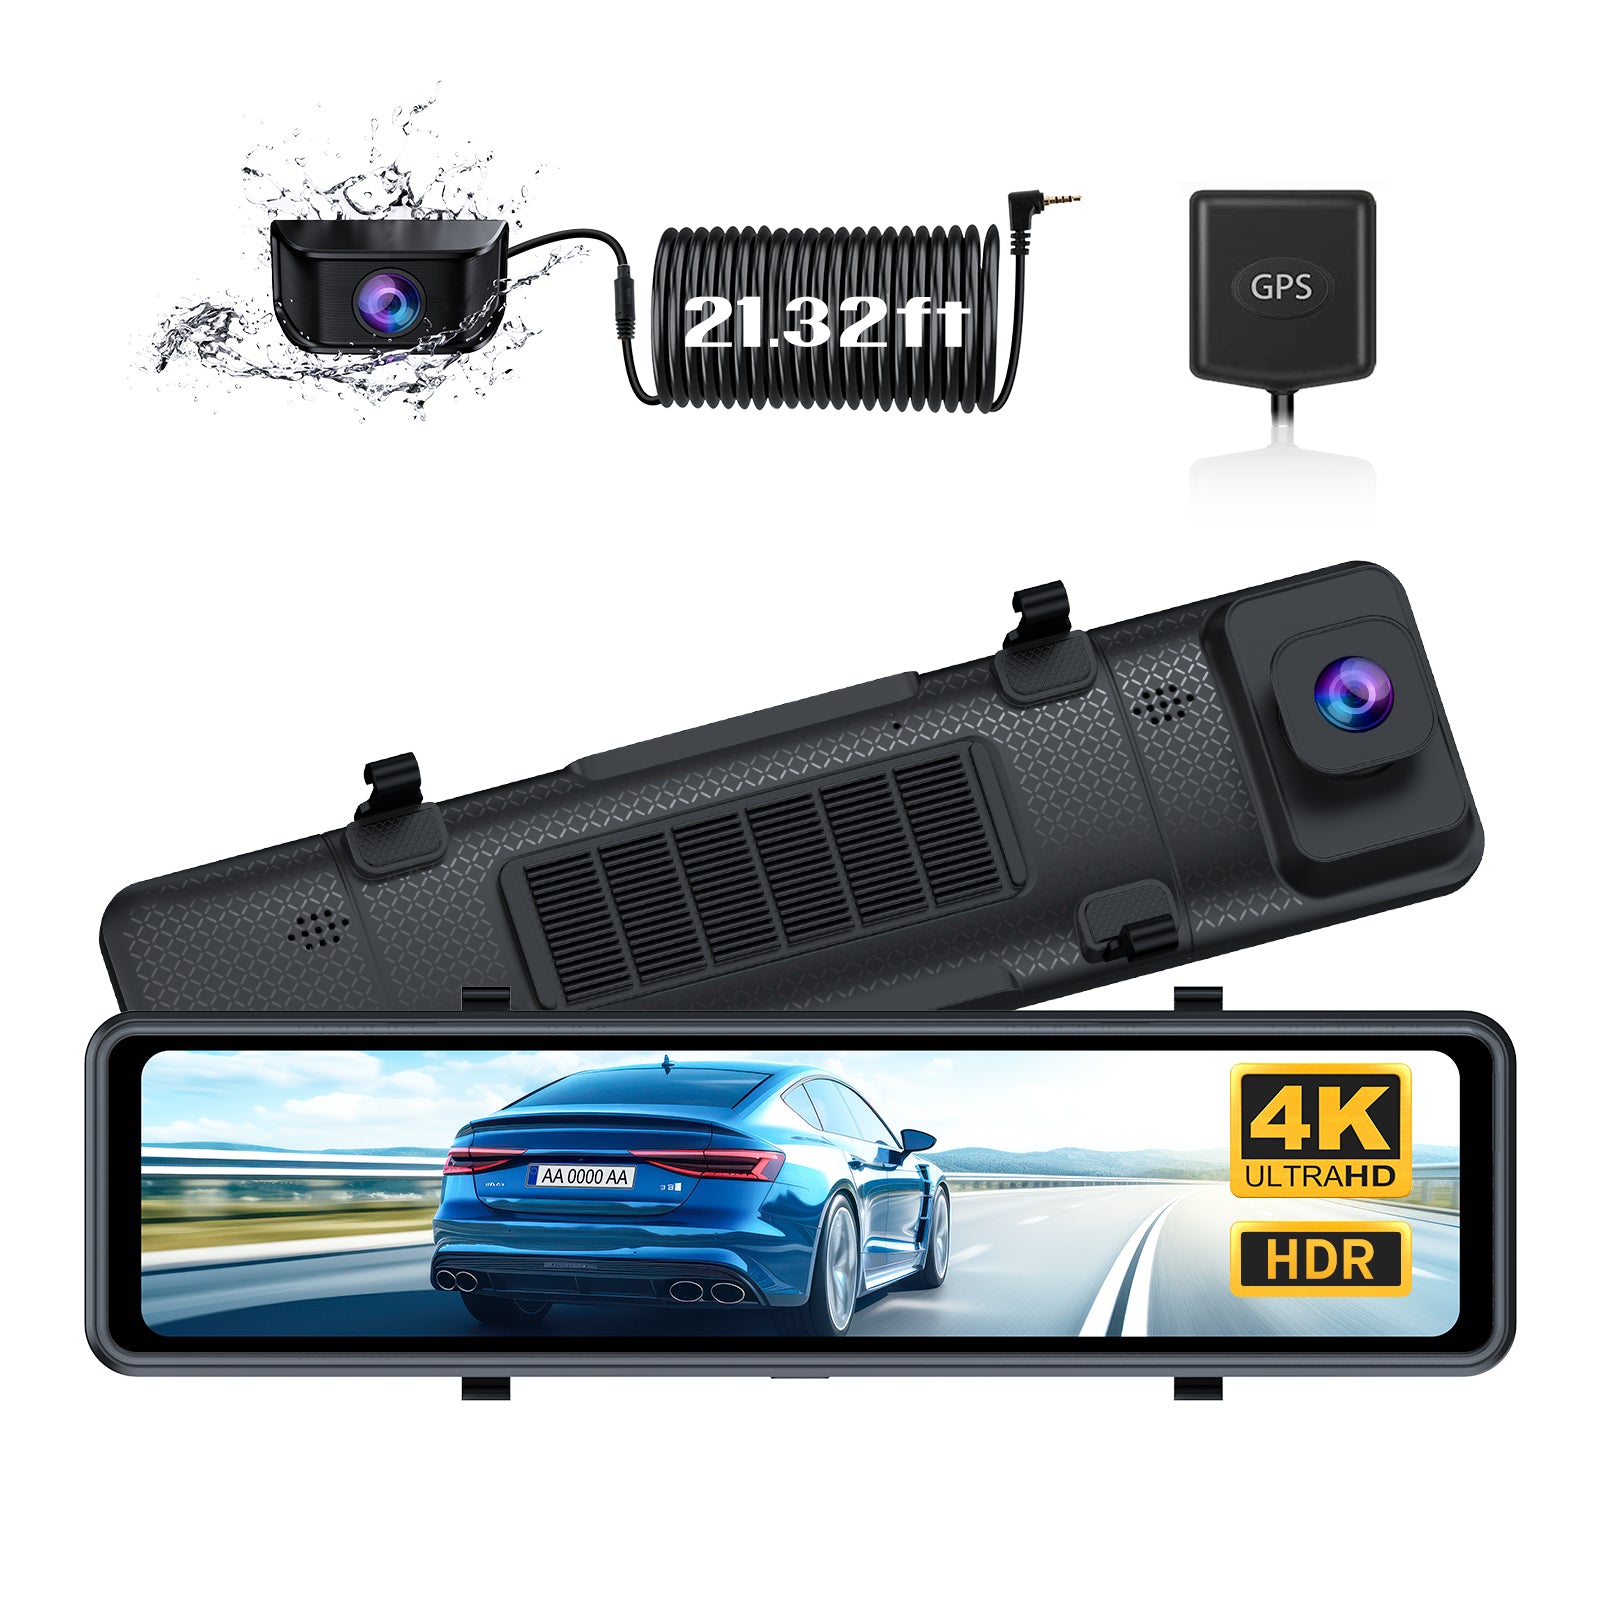 NexiGo D90 4K HDR Mirror Dash Cam installed on the front windshield.